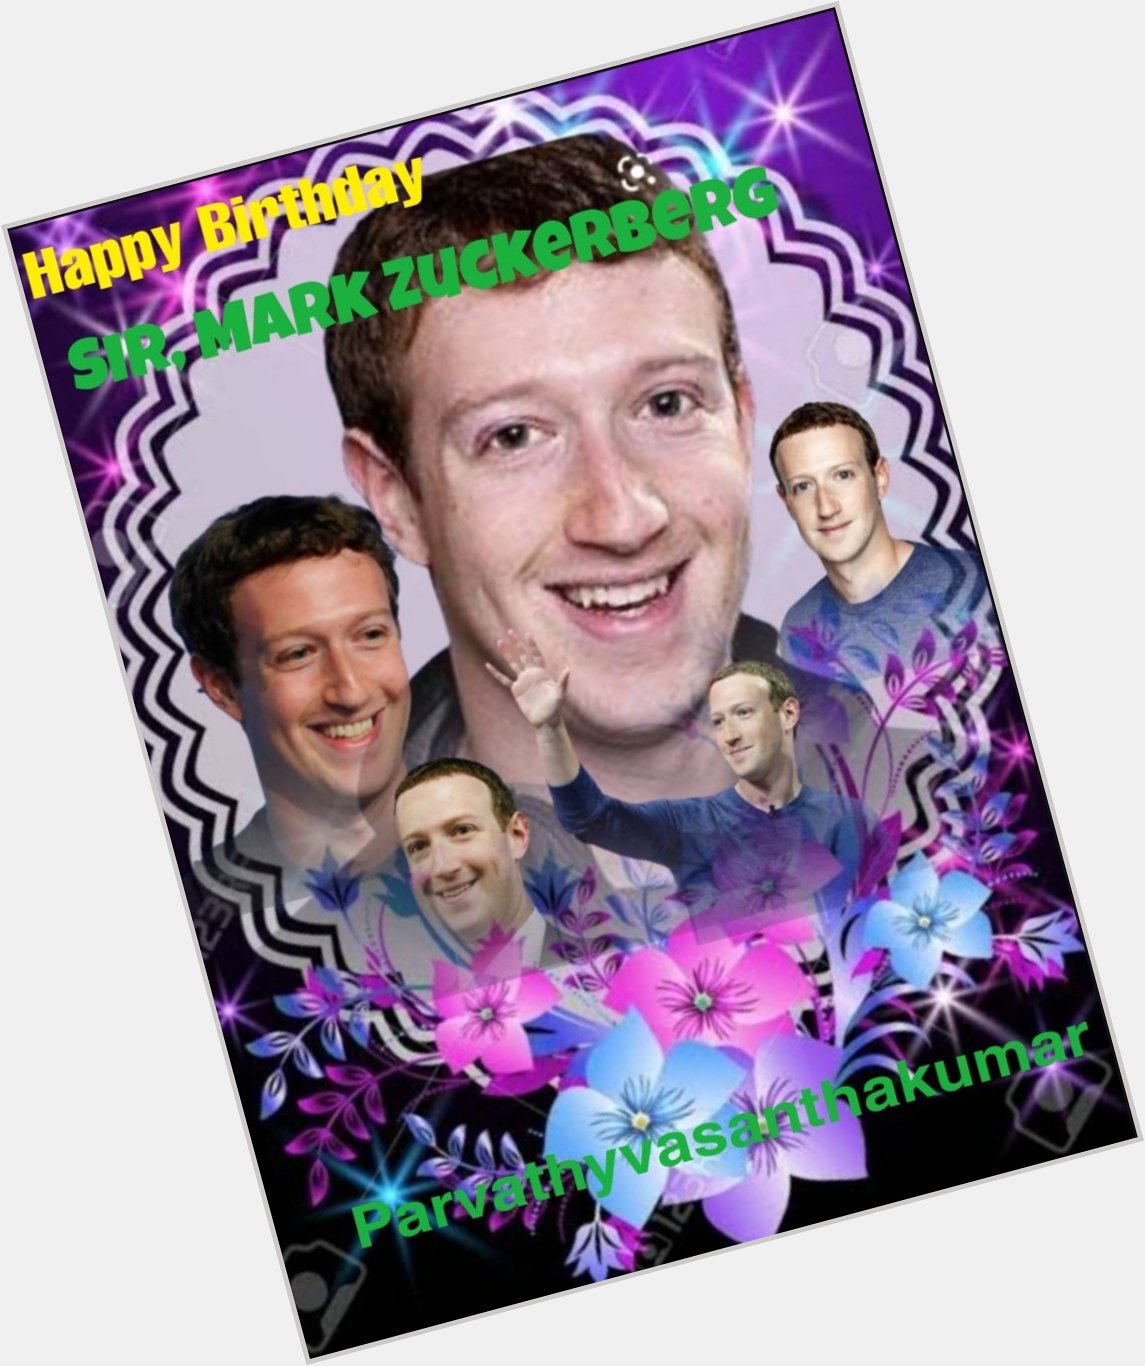 Happy Birthday Sir Mark Zuckerberg 